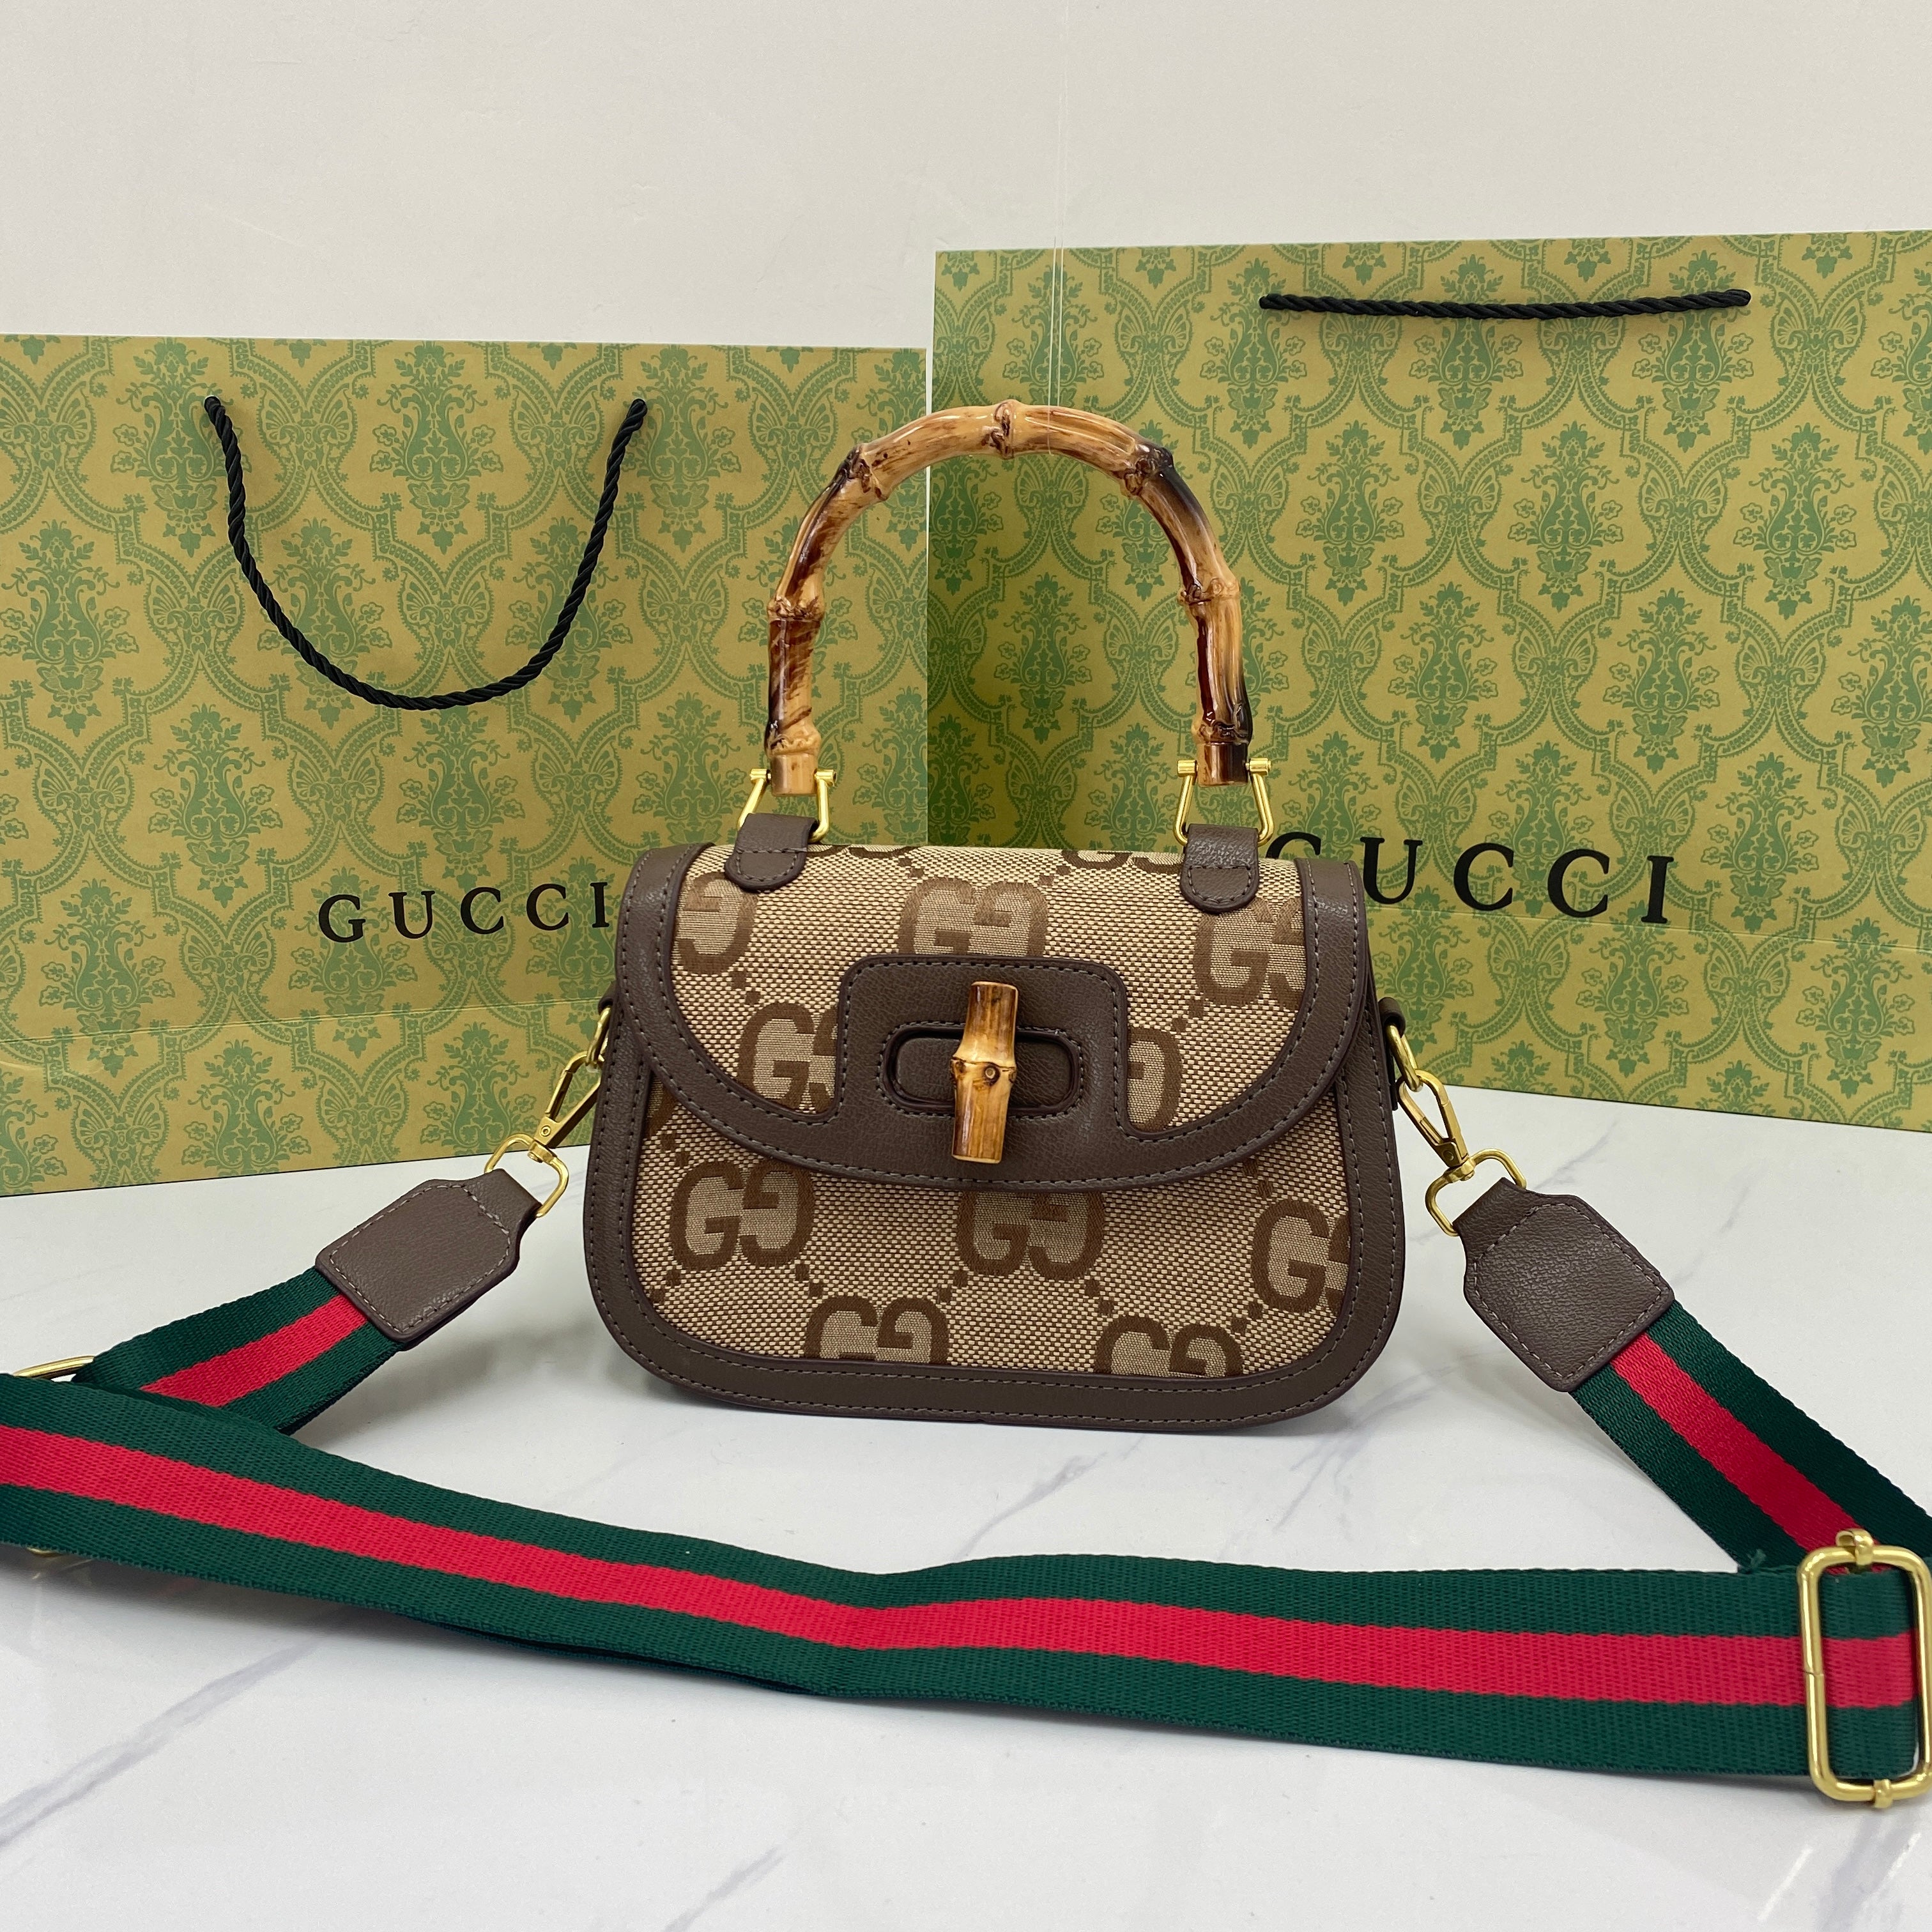 GG Double G Bamboo Handle Handbag Women's Leather Bag Vintage Bag Handbag Crossbody Bag Messenge